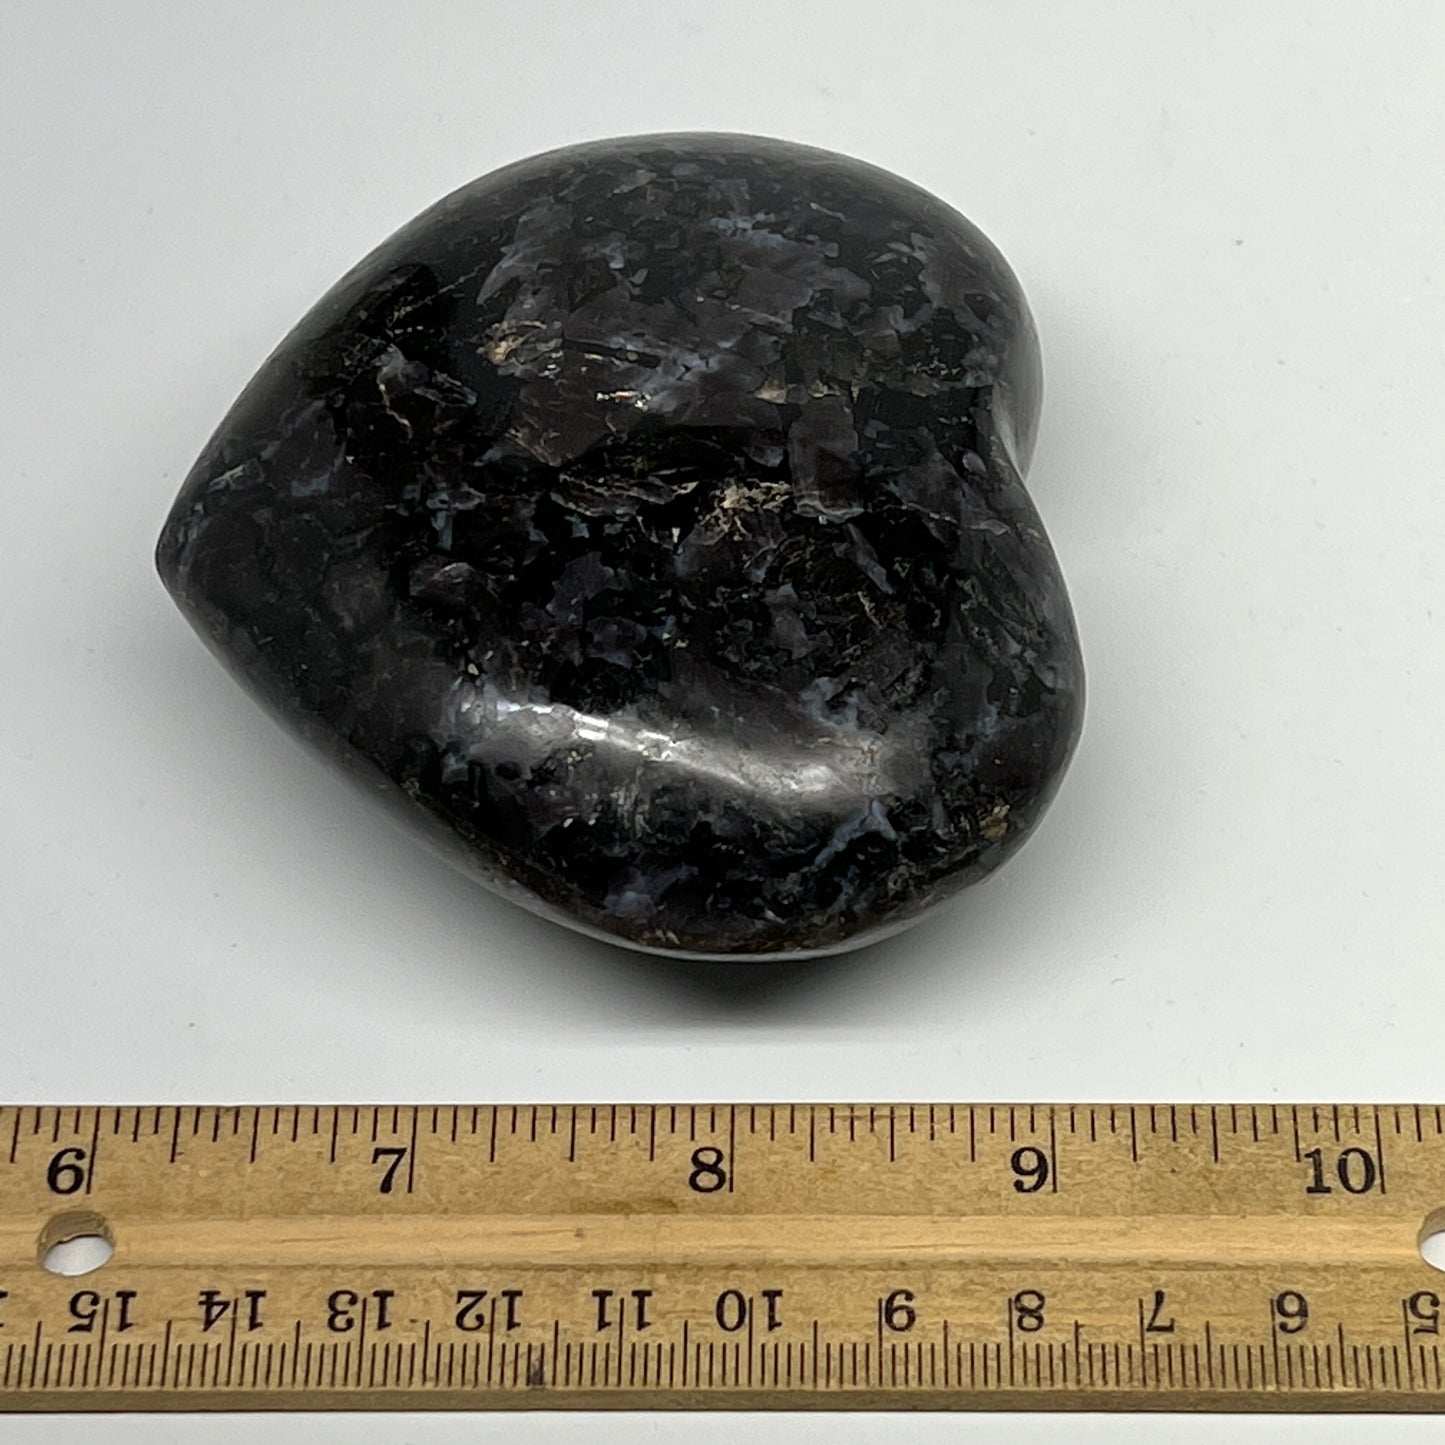 378g,3"x3.5"x1.4" Indigo Gabro Merlinite Heart Gemstone @Madagascar, B19954